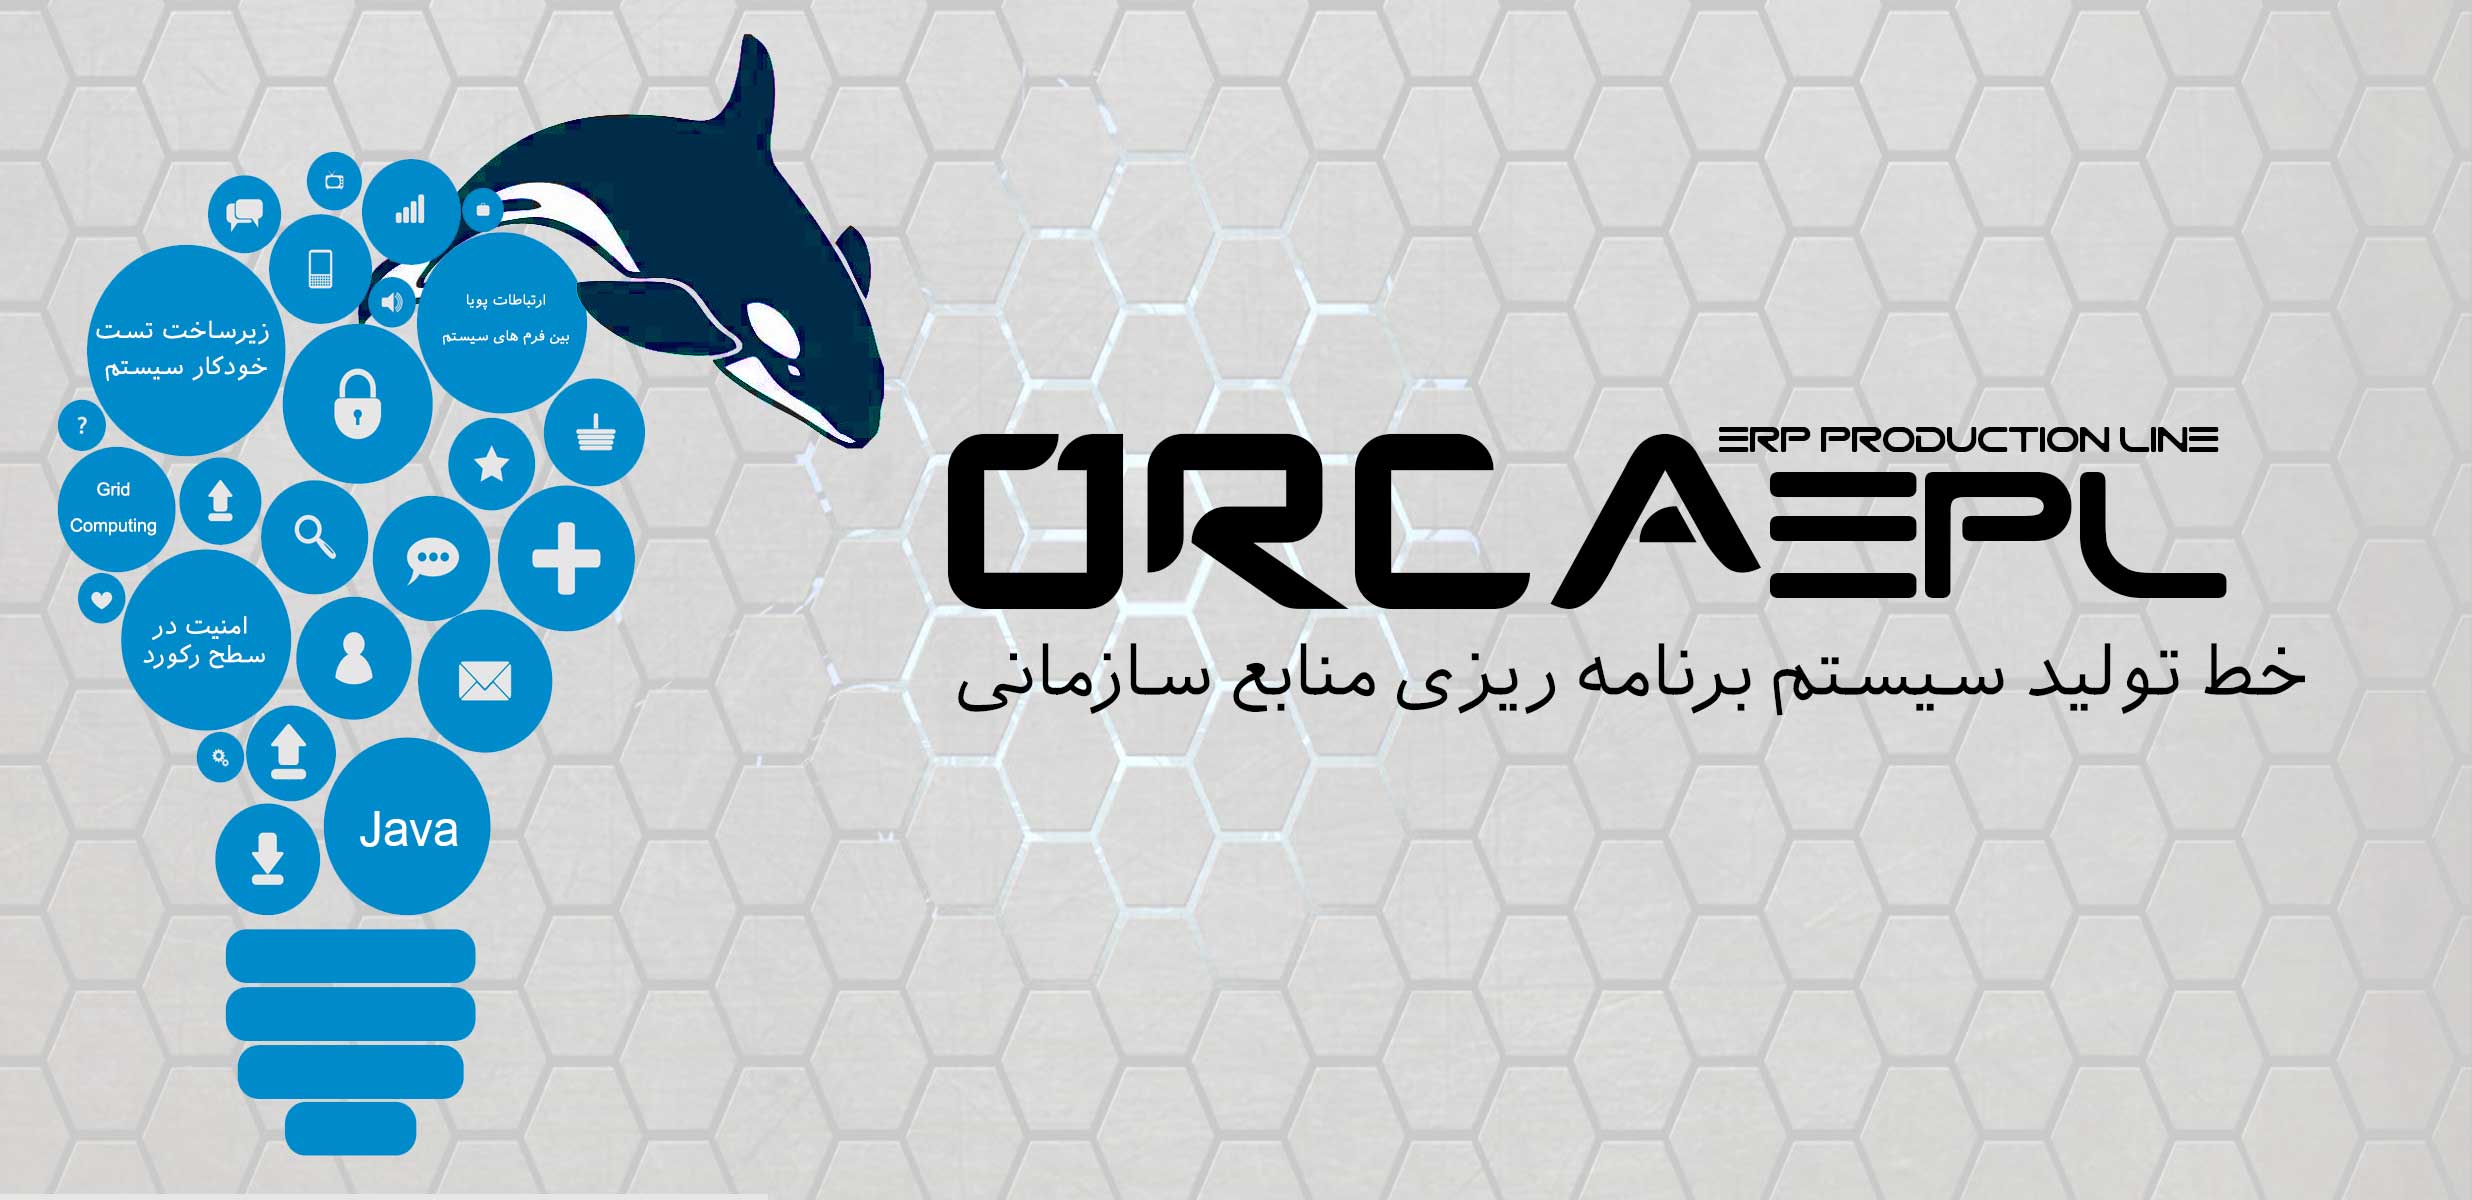 خط تولید نرم افزارهای سازمانی و ERP با نام ORCA